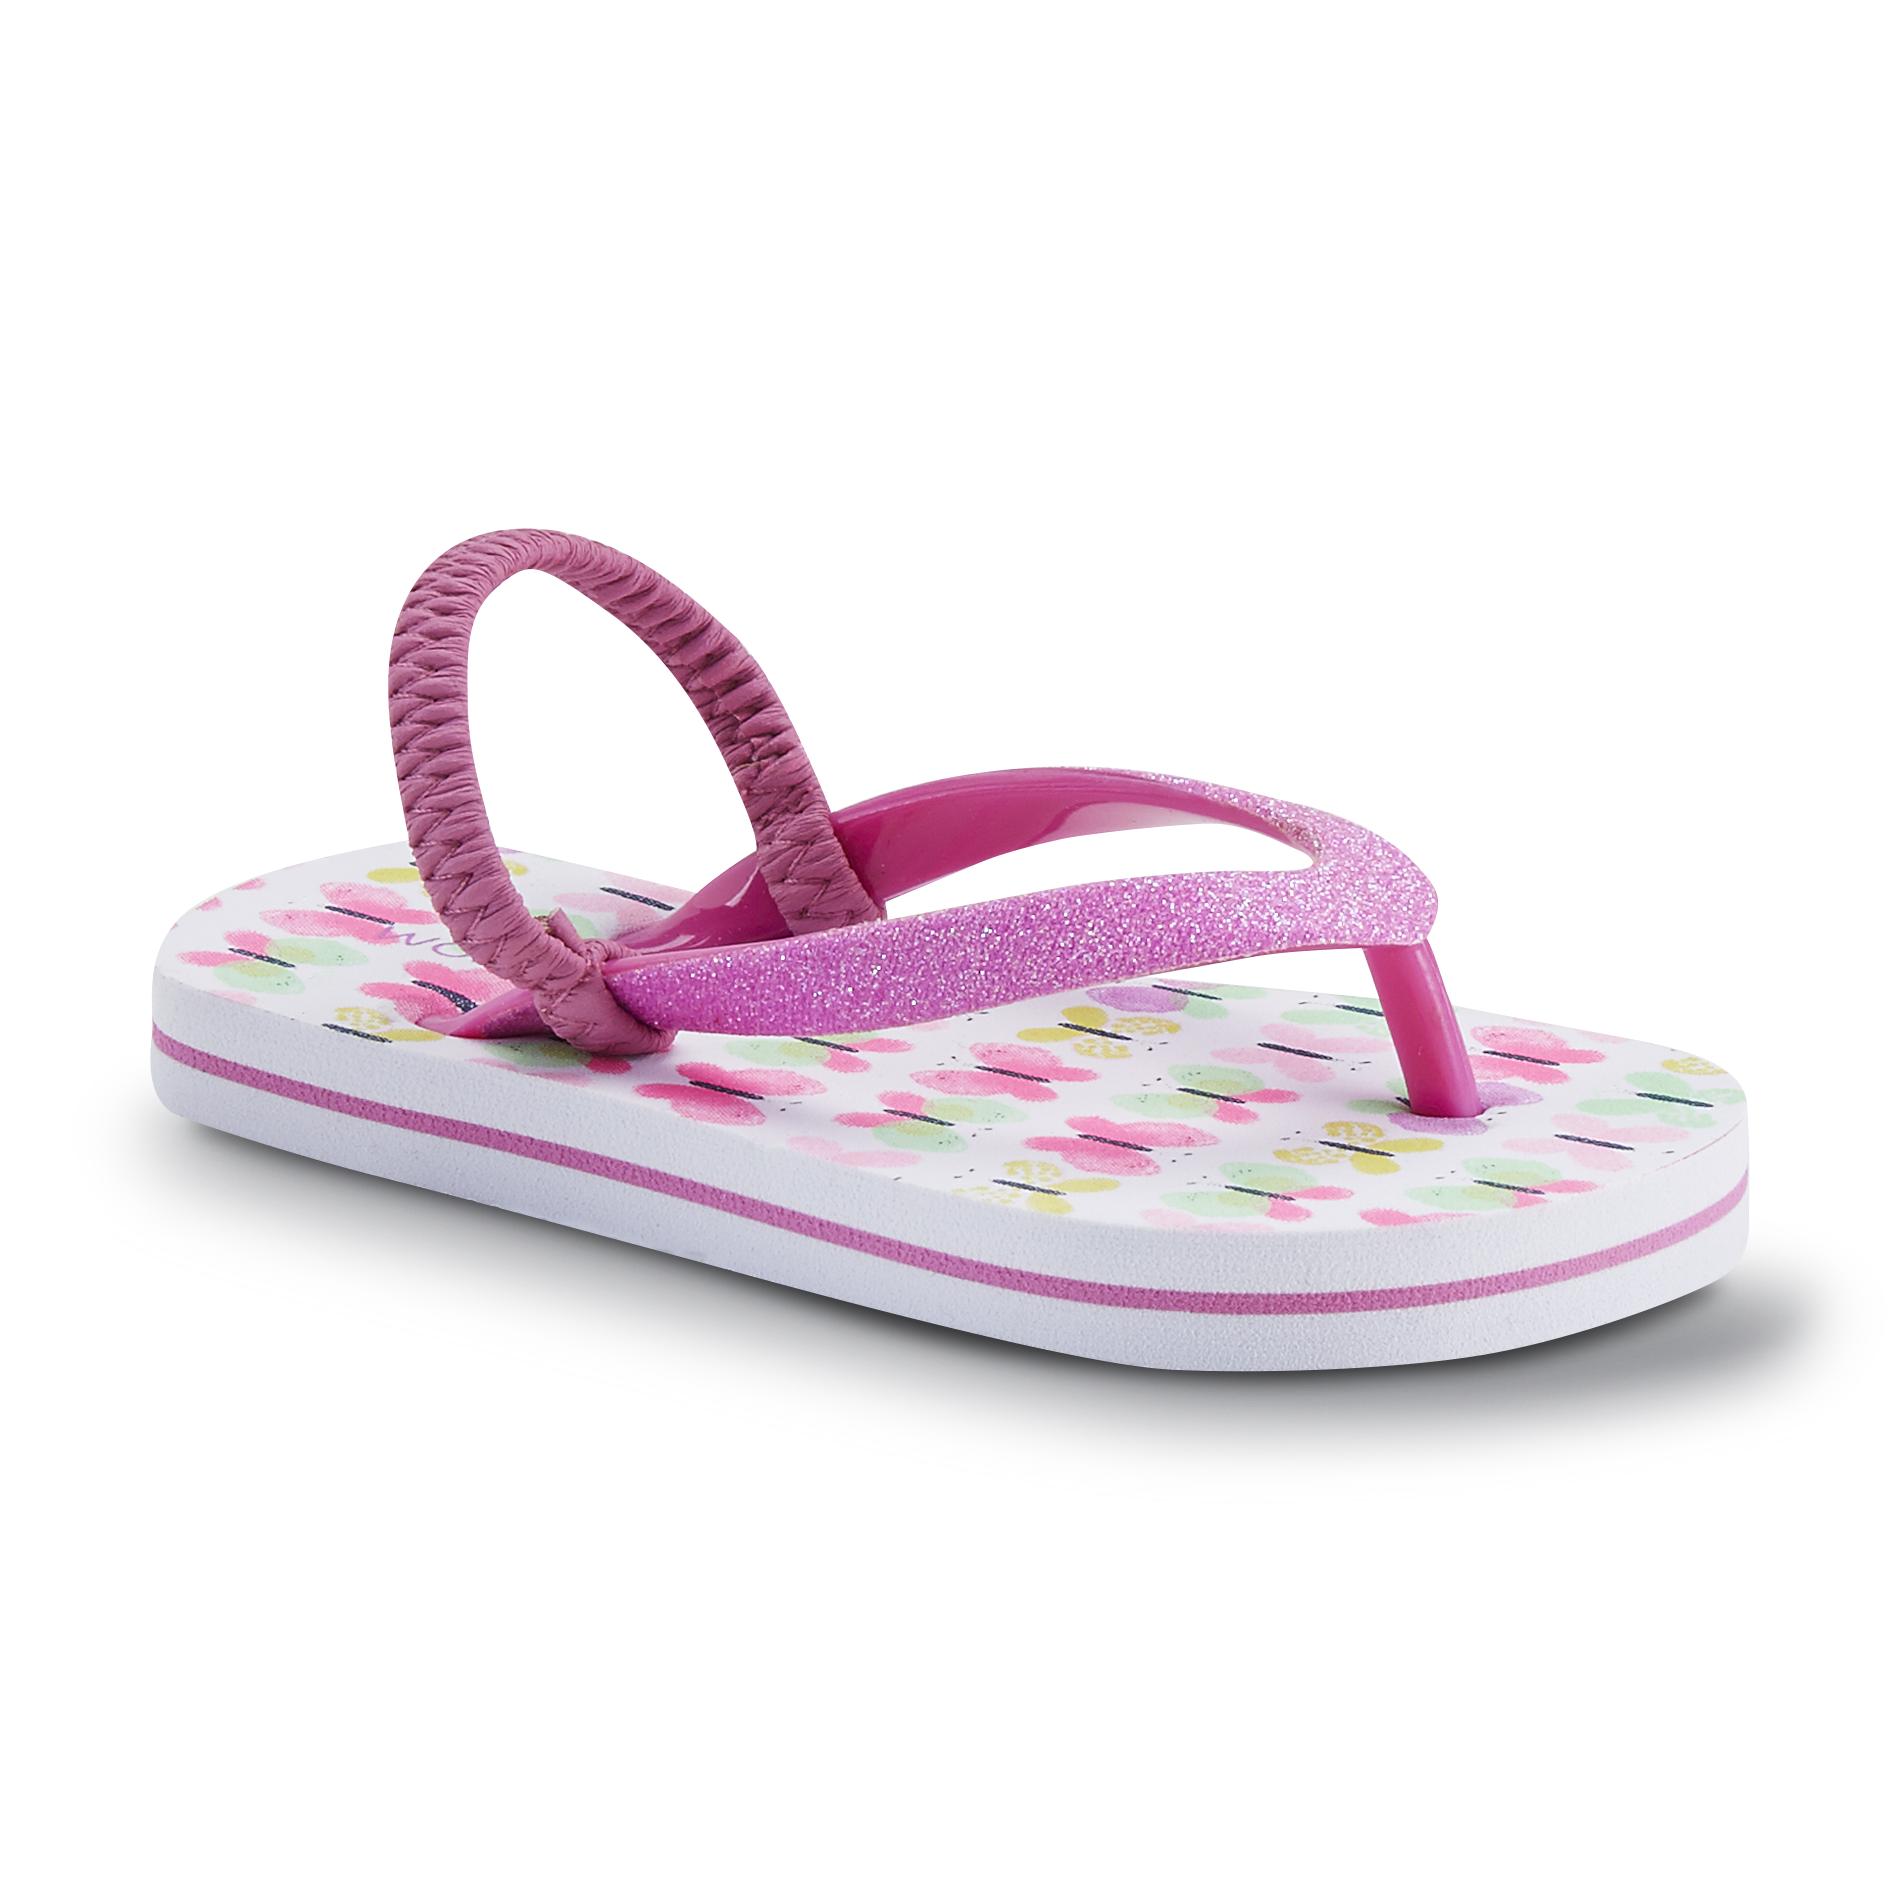 WonderKids Toddler Girl's Pink/White/Butterfly Print Glitter Sandal